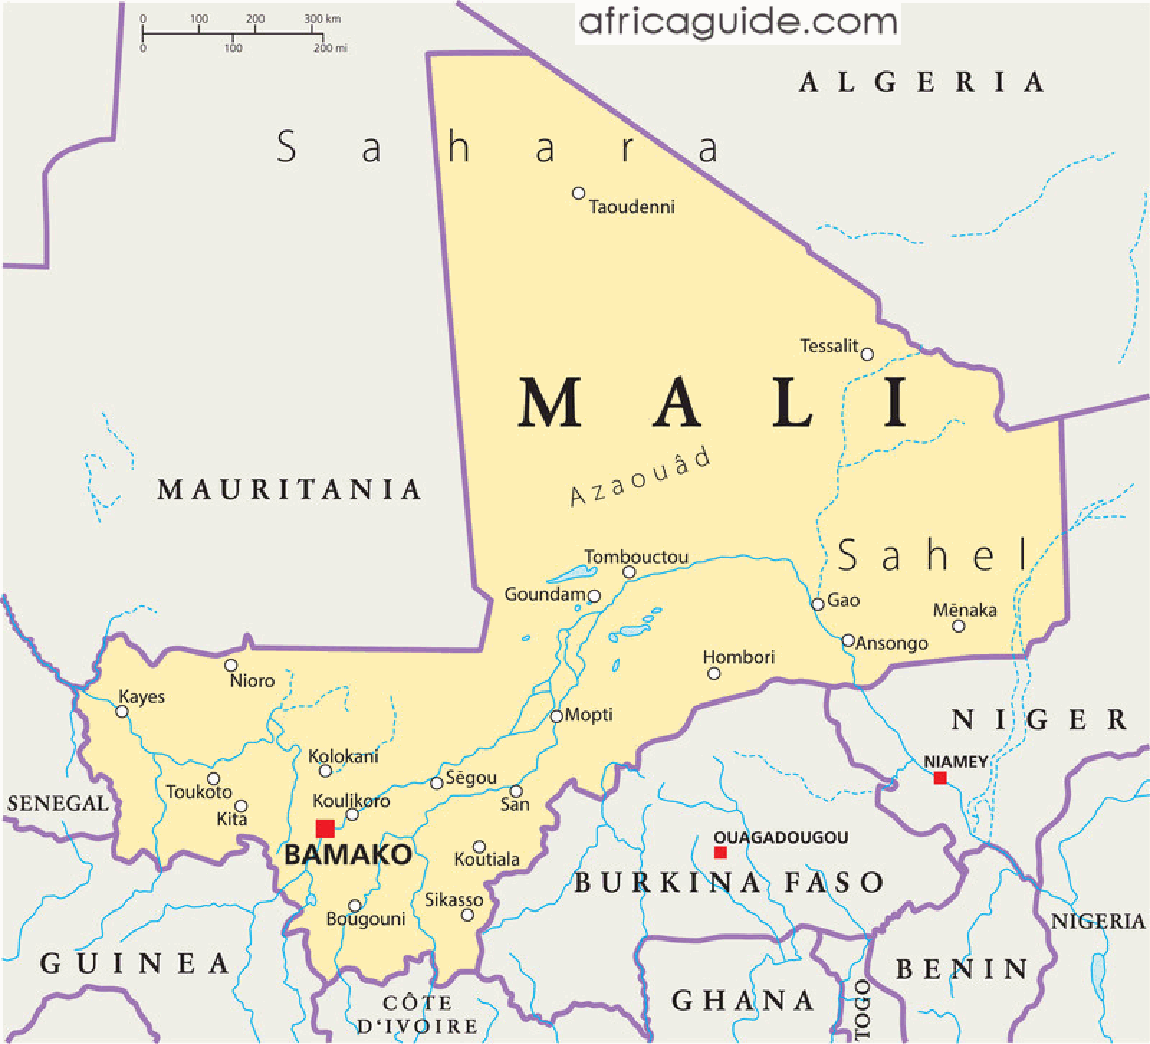 Putnički autobus udario improvizovanu bombu u centru Malija; 10 mrtvih